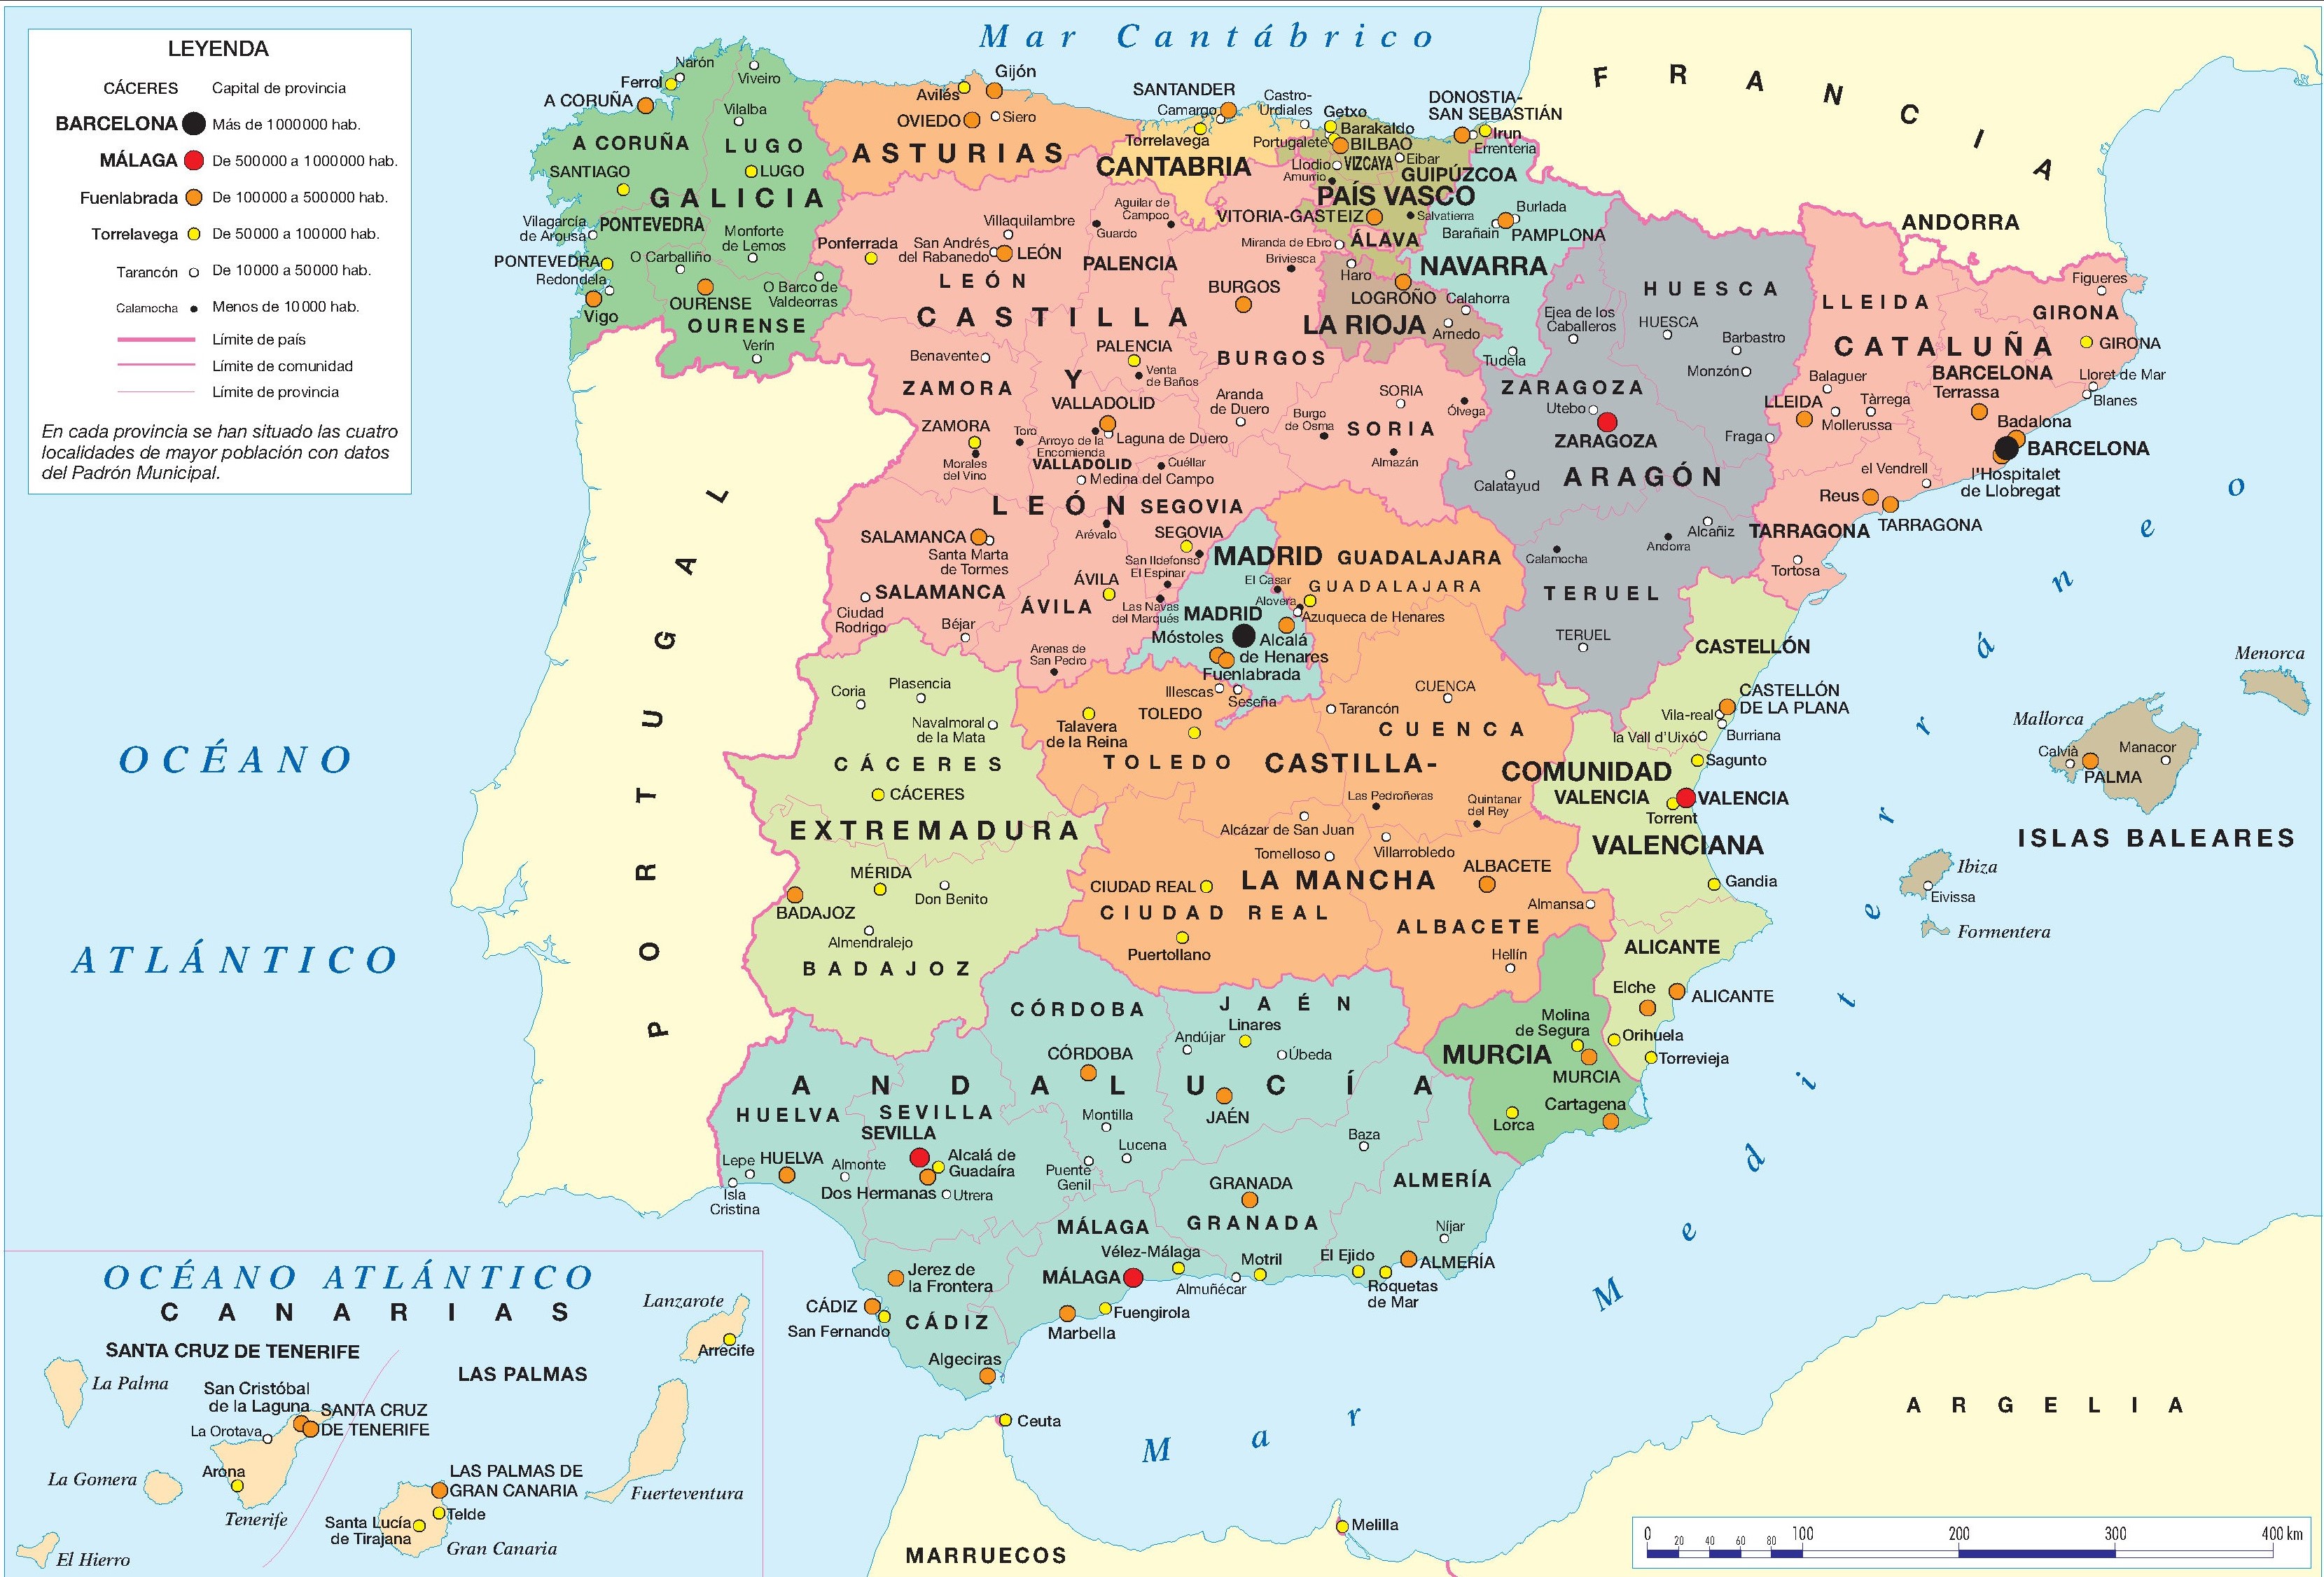 Mapa De España Mapa Físico Geográfico Político Turístico Y Temático